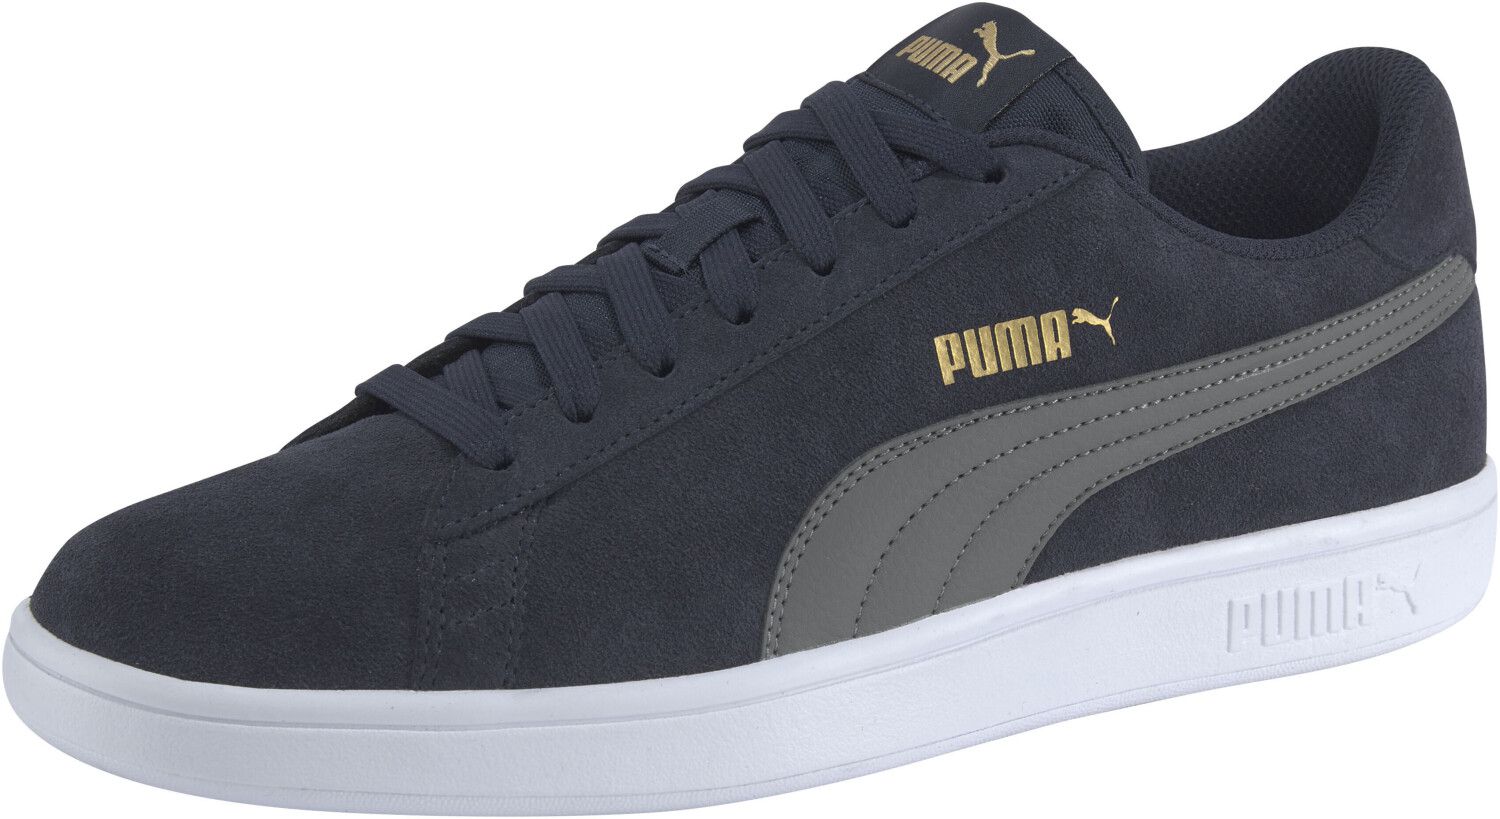 Puma Smash V2 Low Top Sneaker in Navy für 26,95€ (statt 44€)   Prime